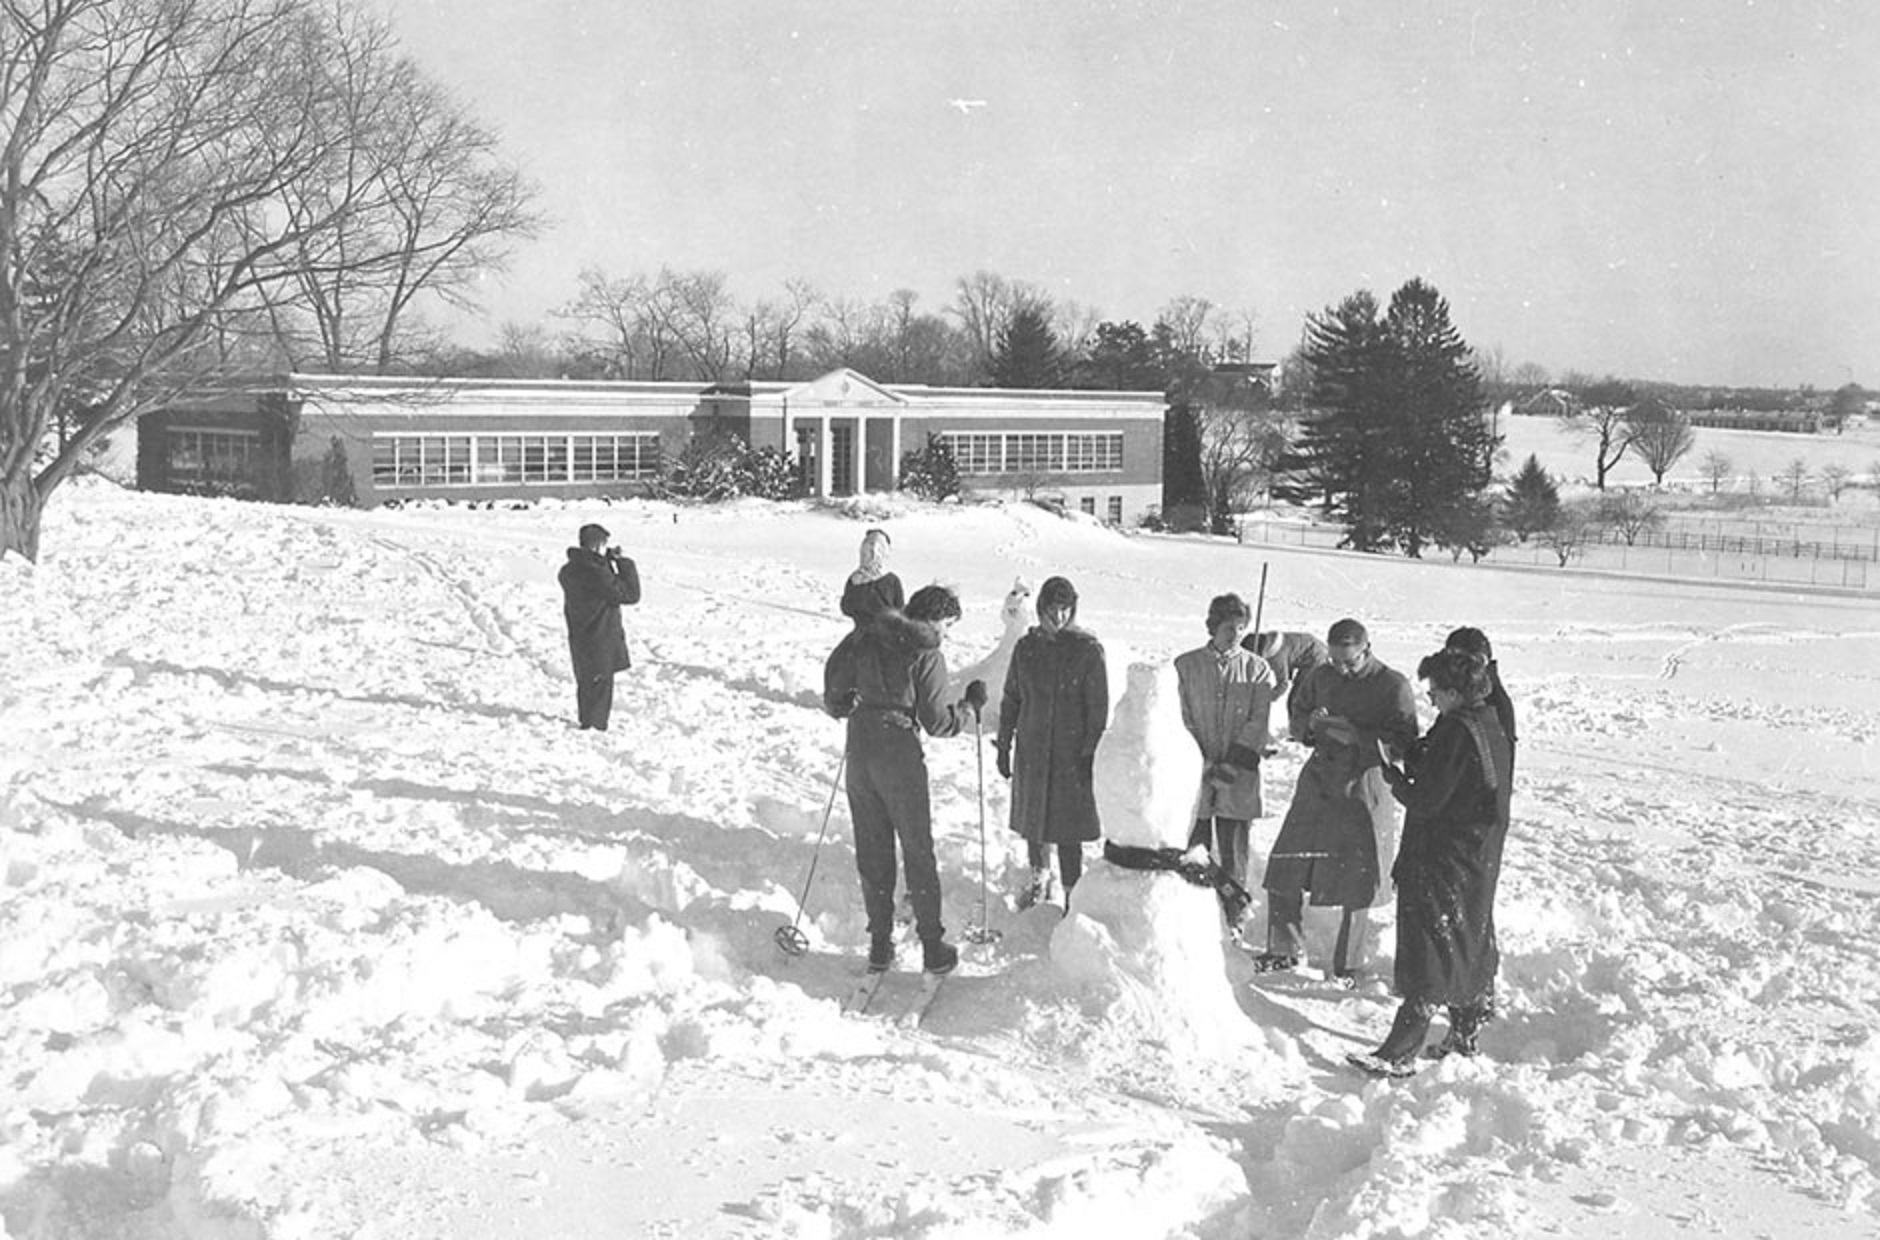 George School in the 1960s – George School